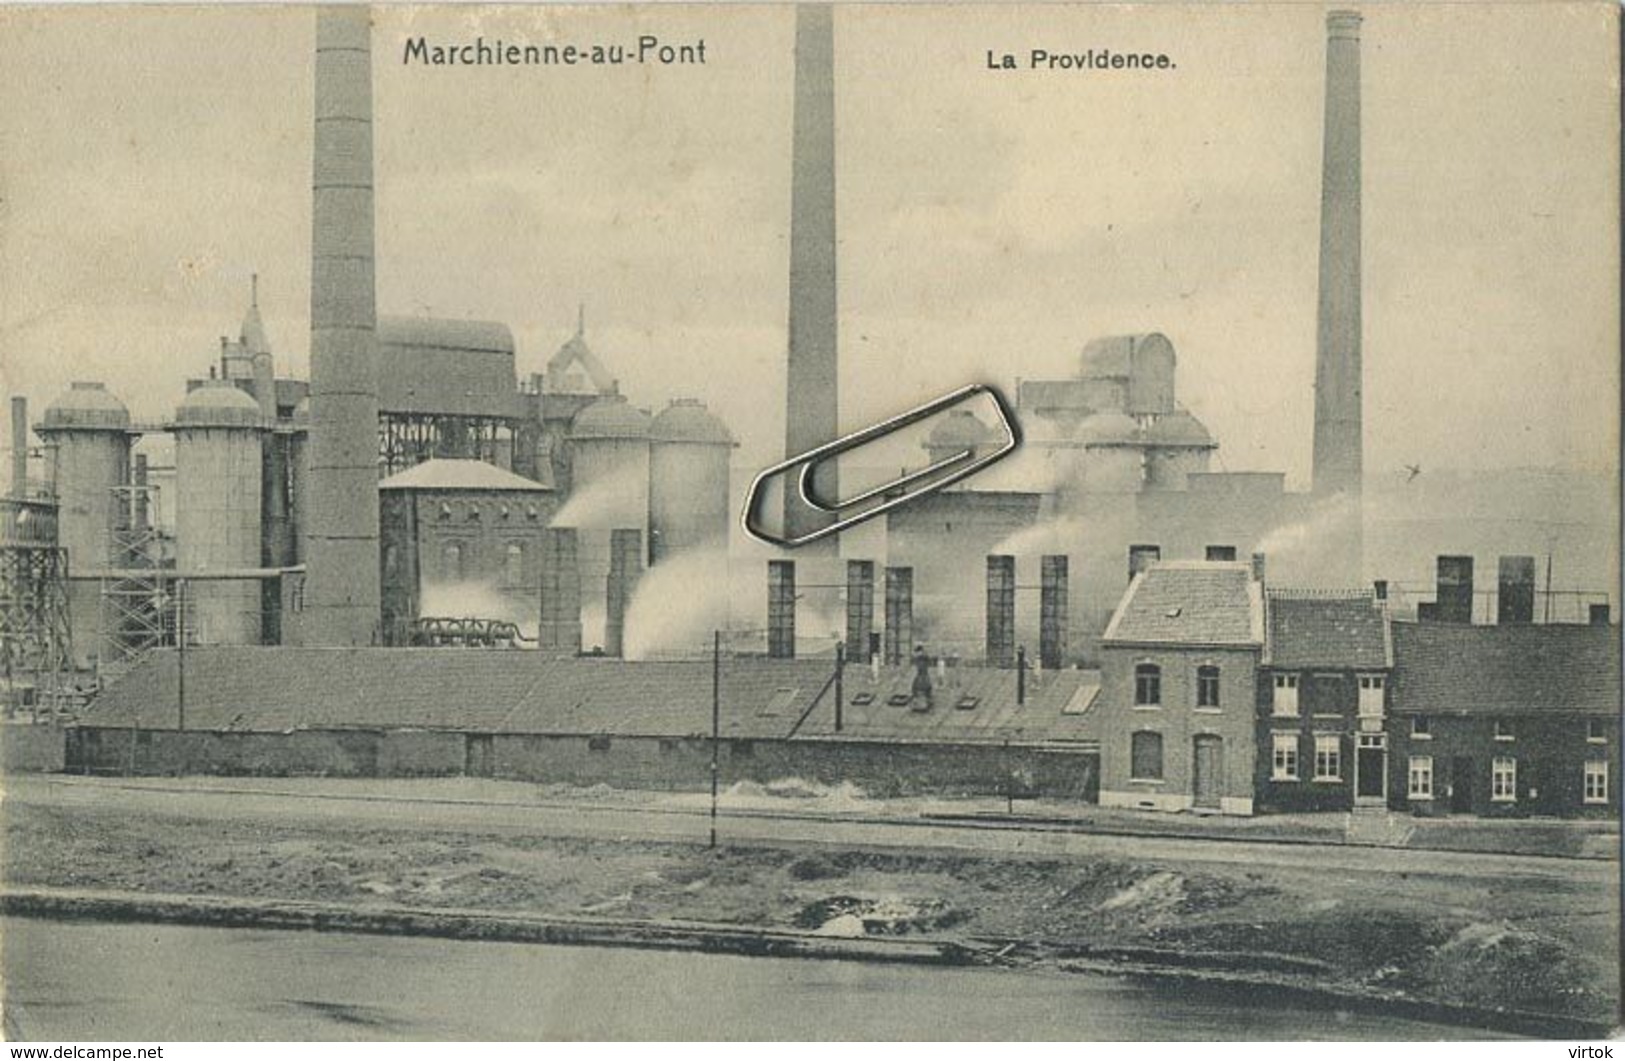 Marchienne-au-Pont :  Charbonnage :  La Providence - Charleroi